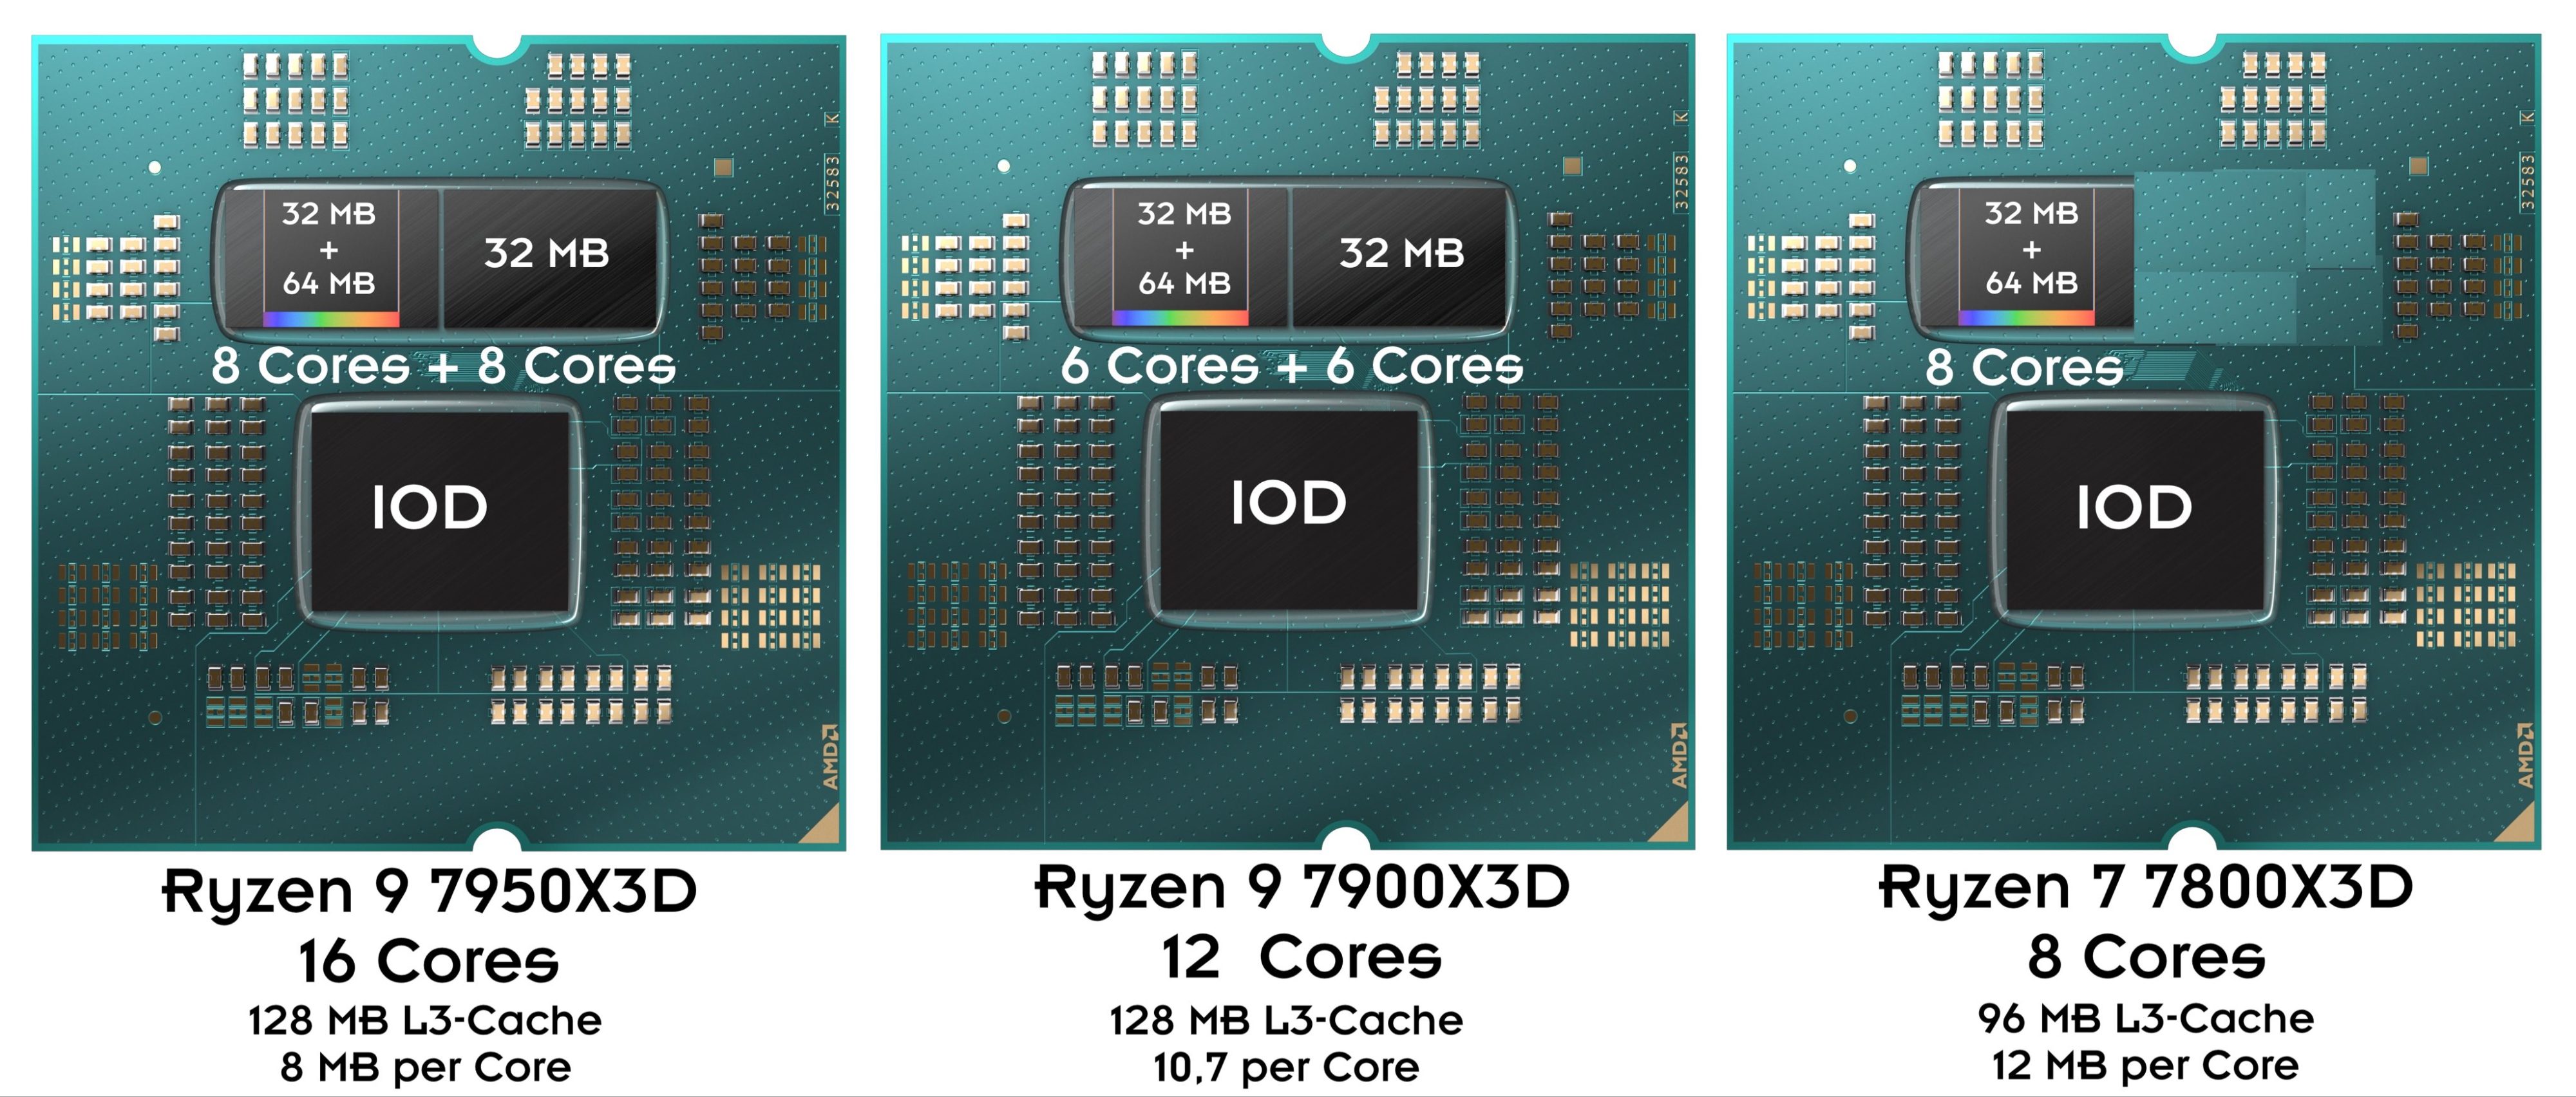 AMD Ryzen 9 7900X3D has 6 active cores in each chiplet 